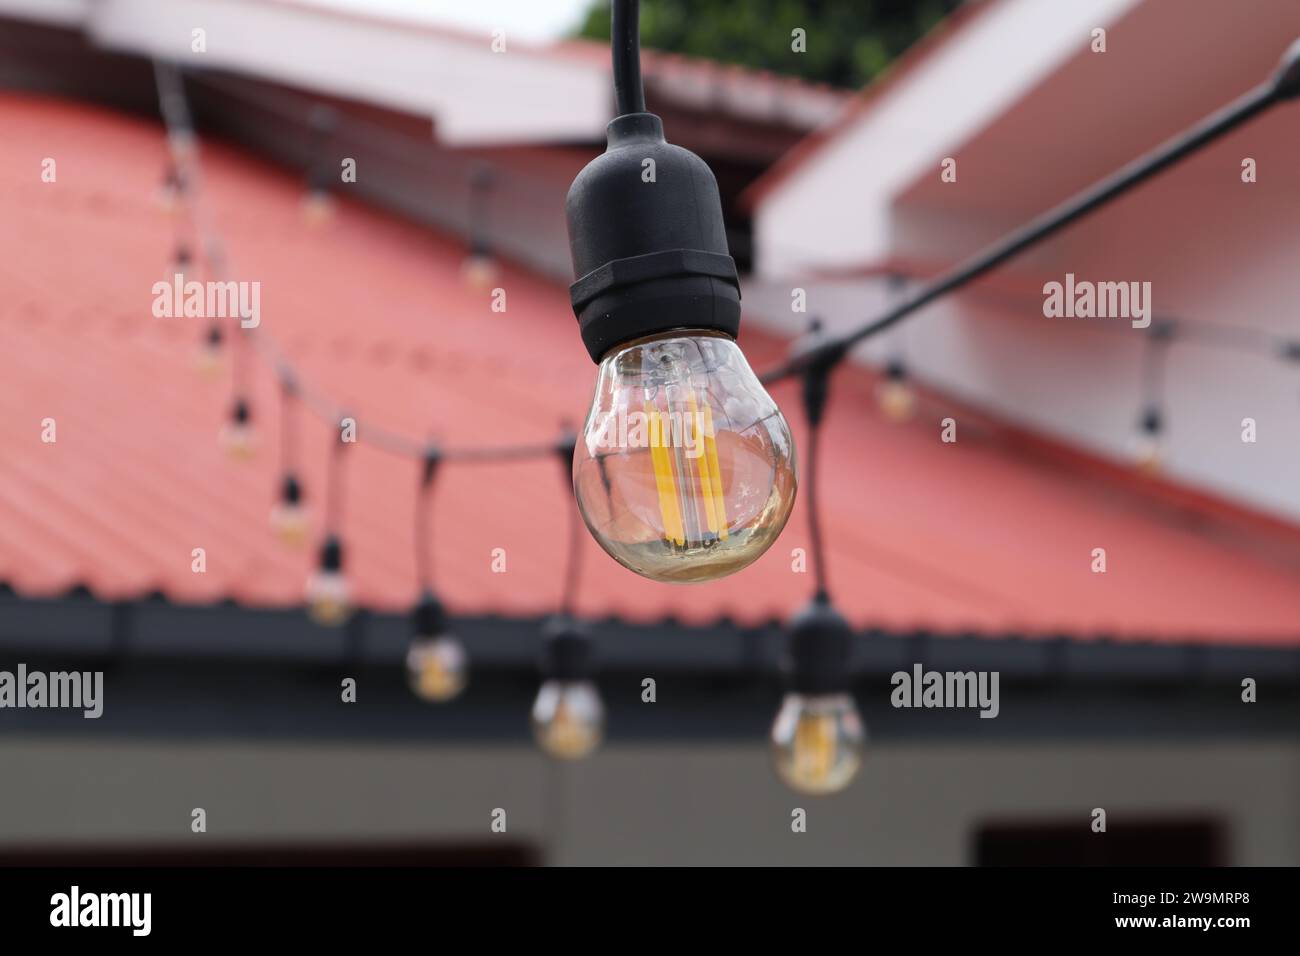 Eine kleine kugelförmige LED-Lampe im Edison-Stil mit orangefarbenen Filamenten und klarem braunem Glas. Dies ist eine Außendekoration Strang Lampe Stockfoto